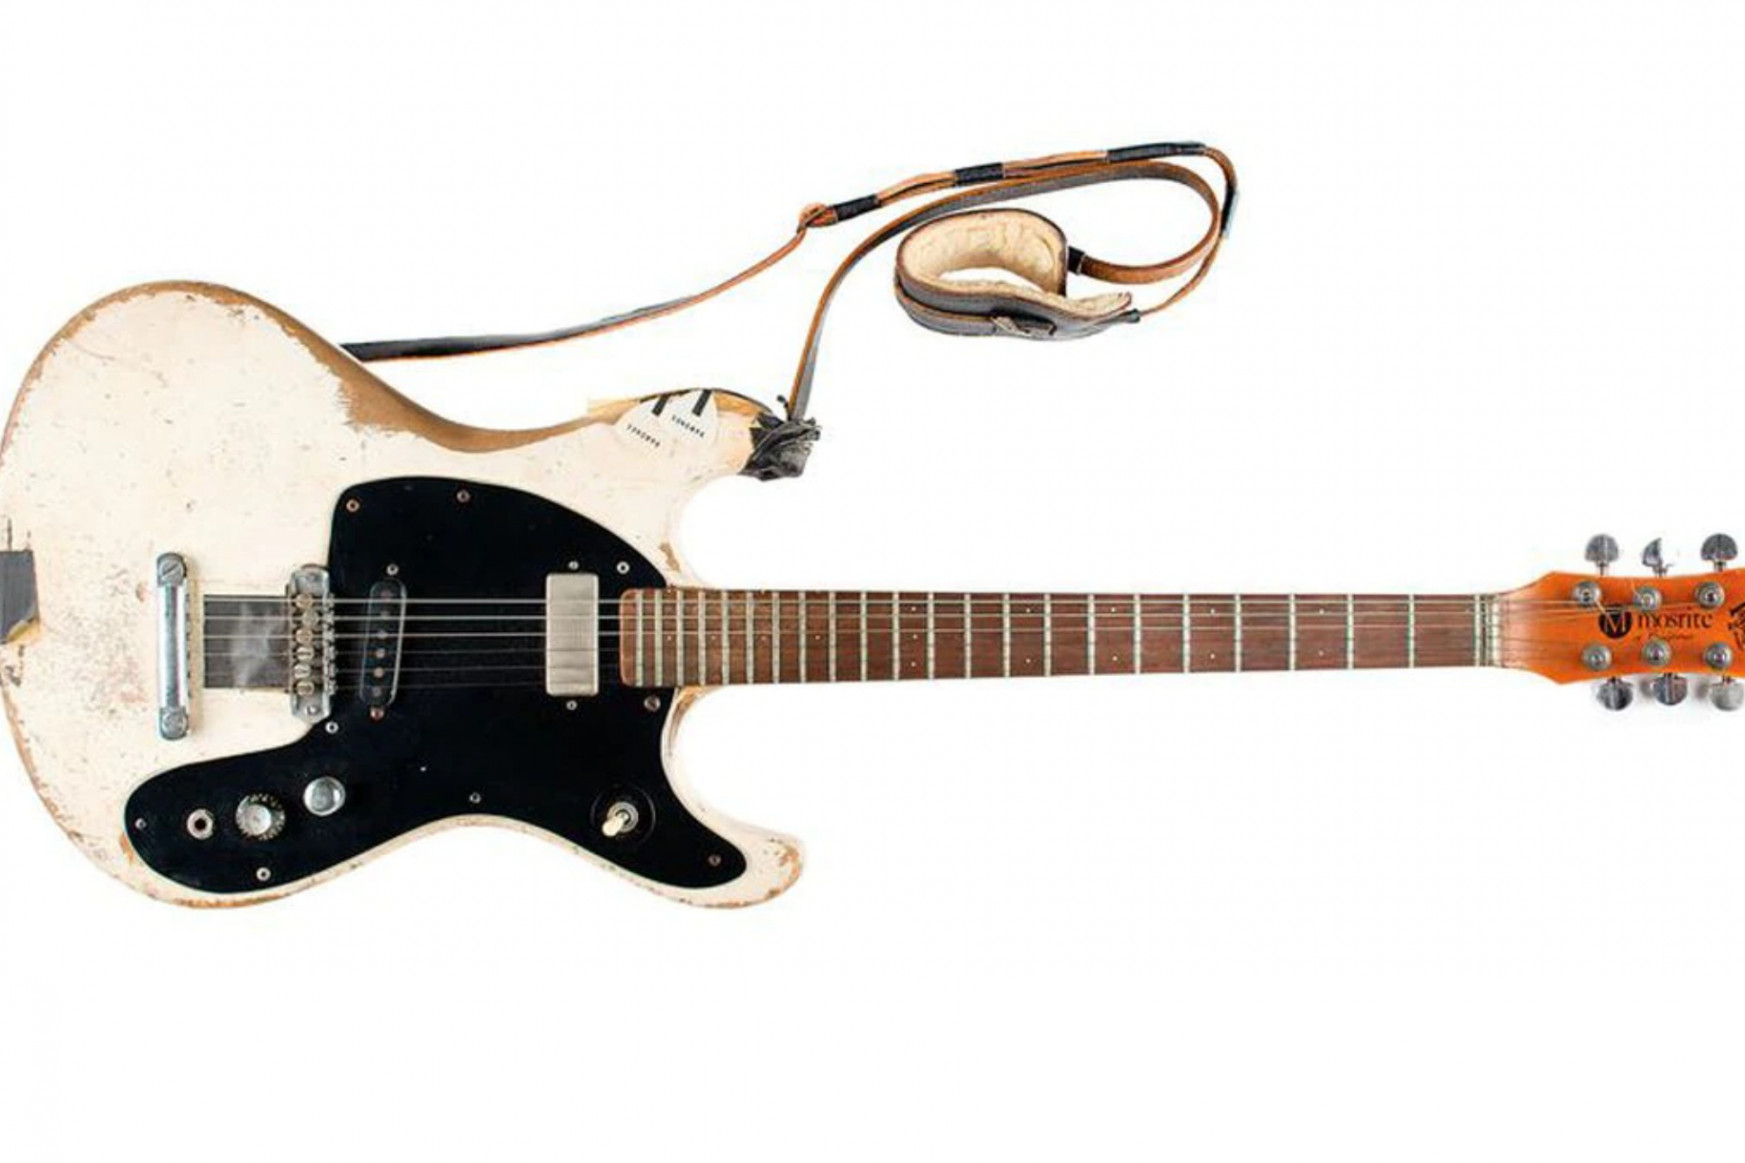 Majdnem 300 millió forintnyi dollárért árverezték el Johnny Ramone egyik gitárját